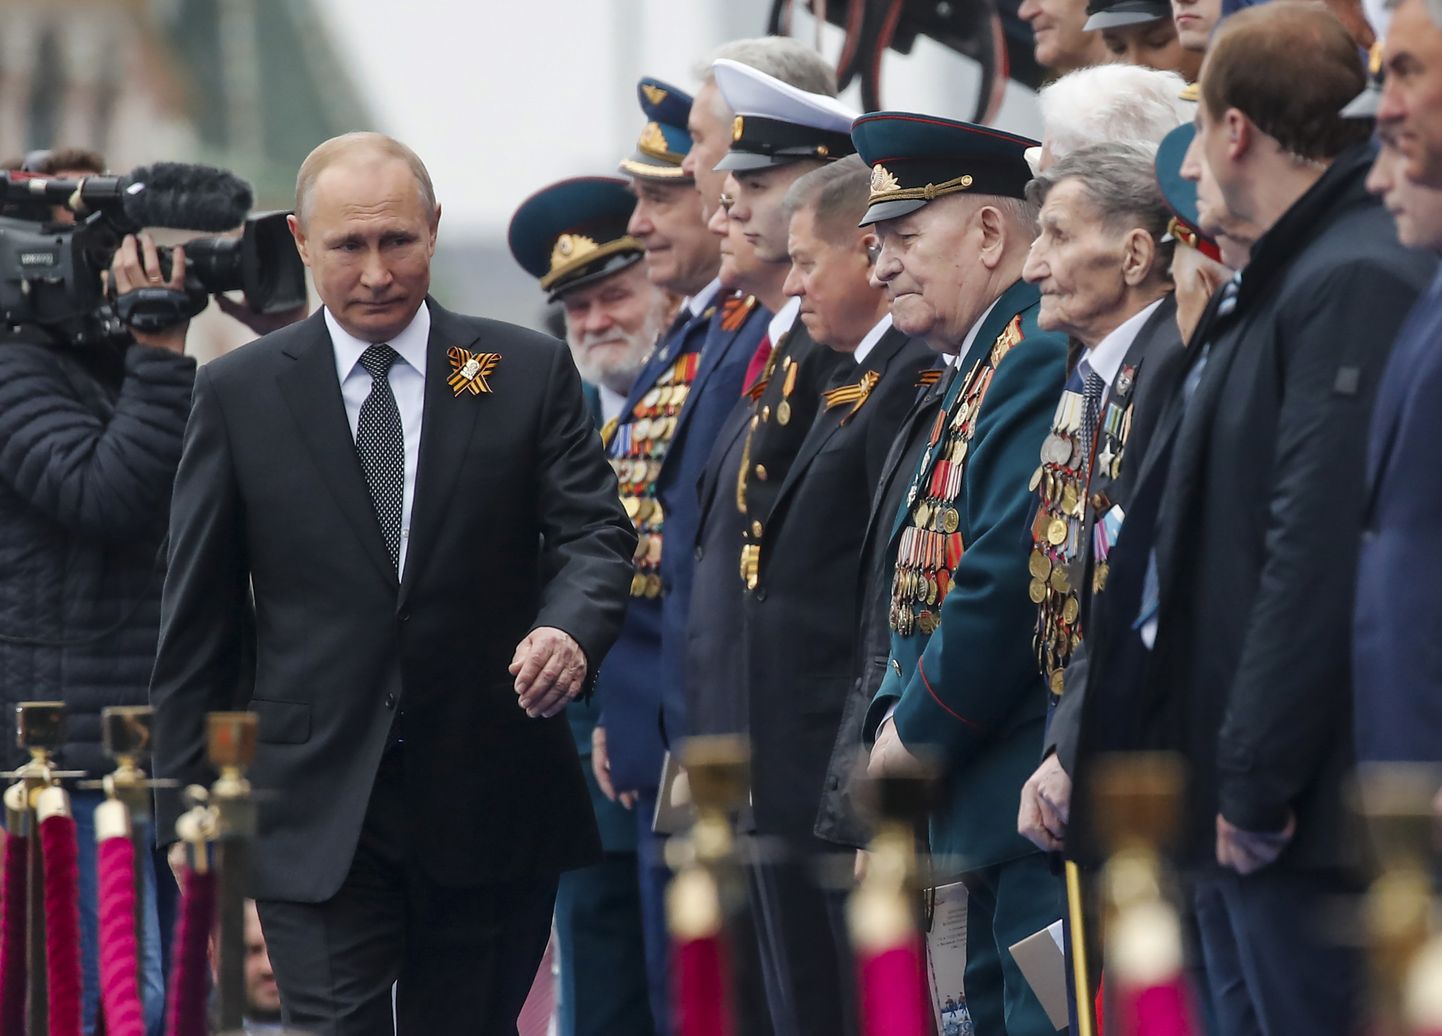 Venemaa president Vladimir Putin ja sõjaveteranid 9. mail 2019 Punasel väljakul võidupüha paraadil